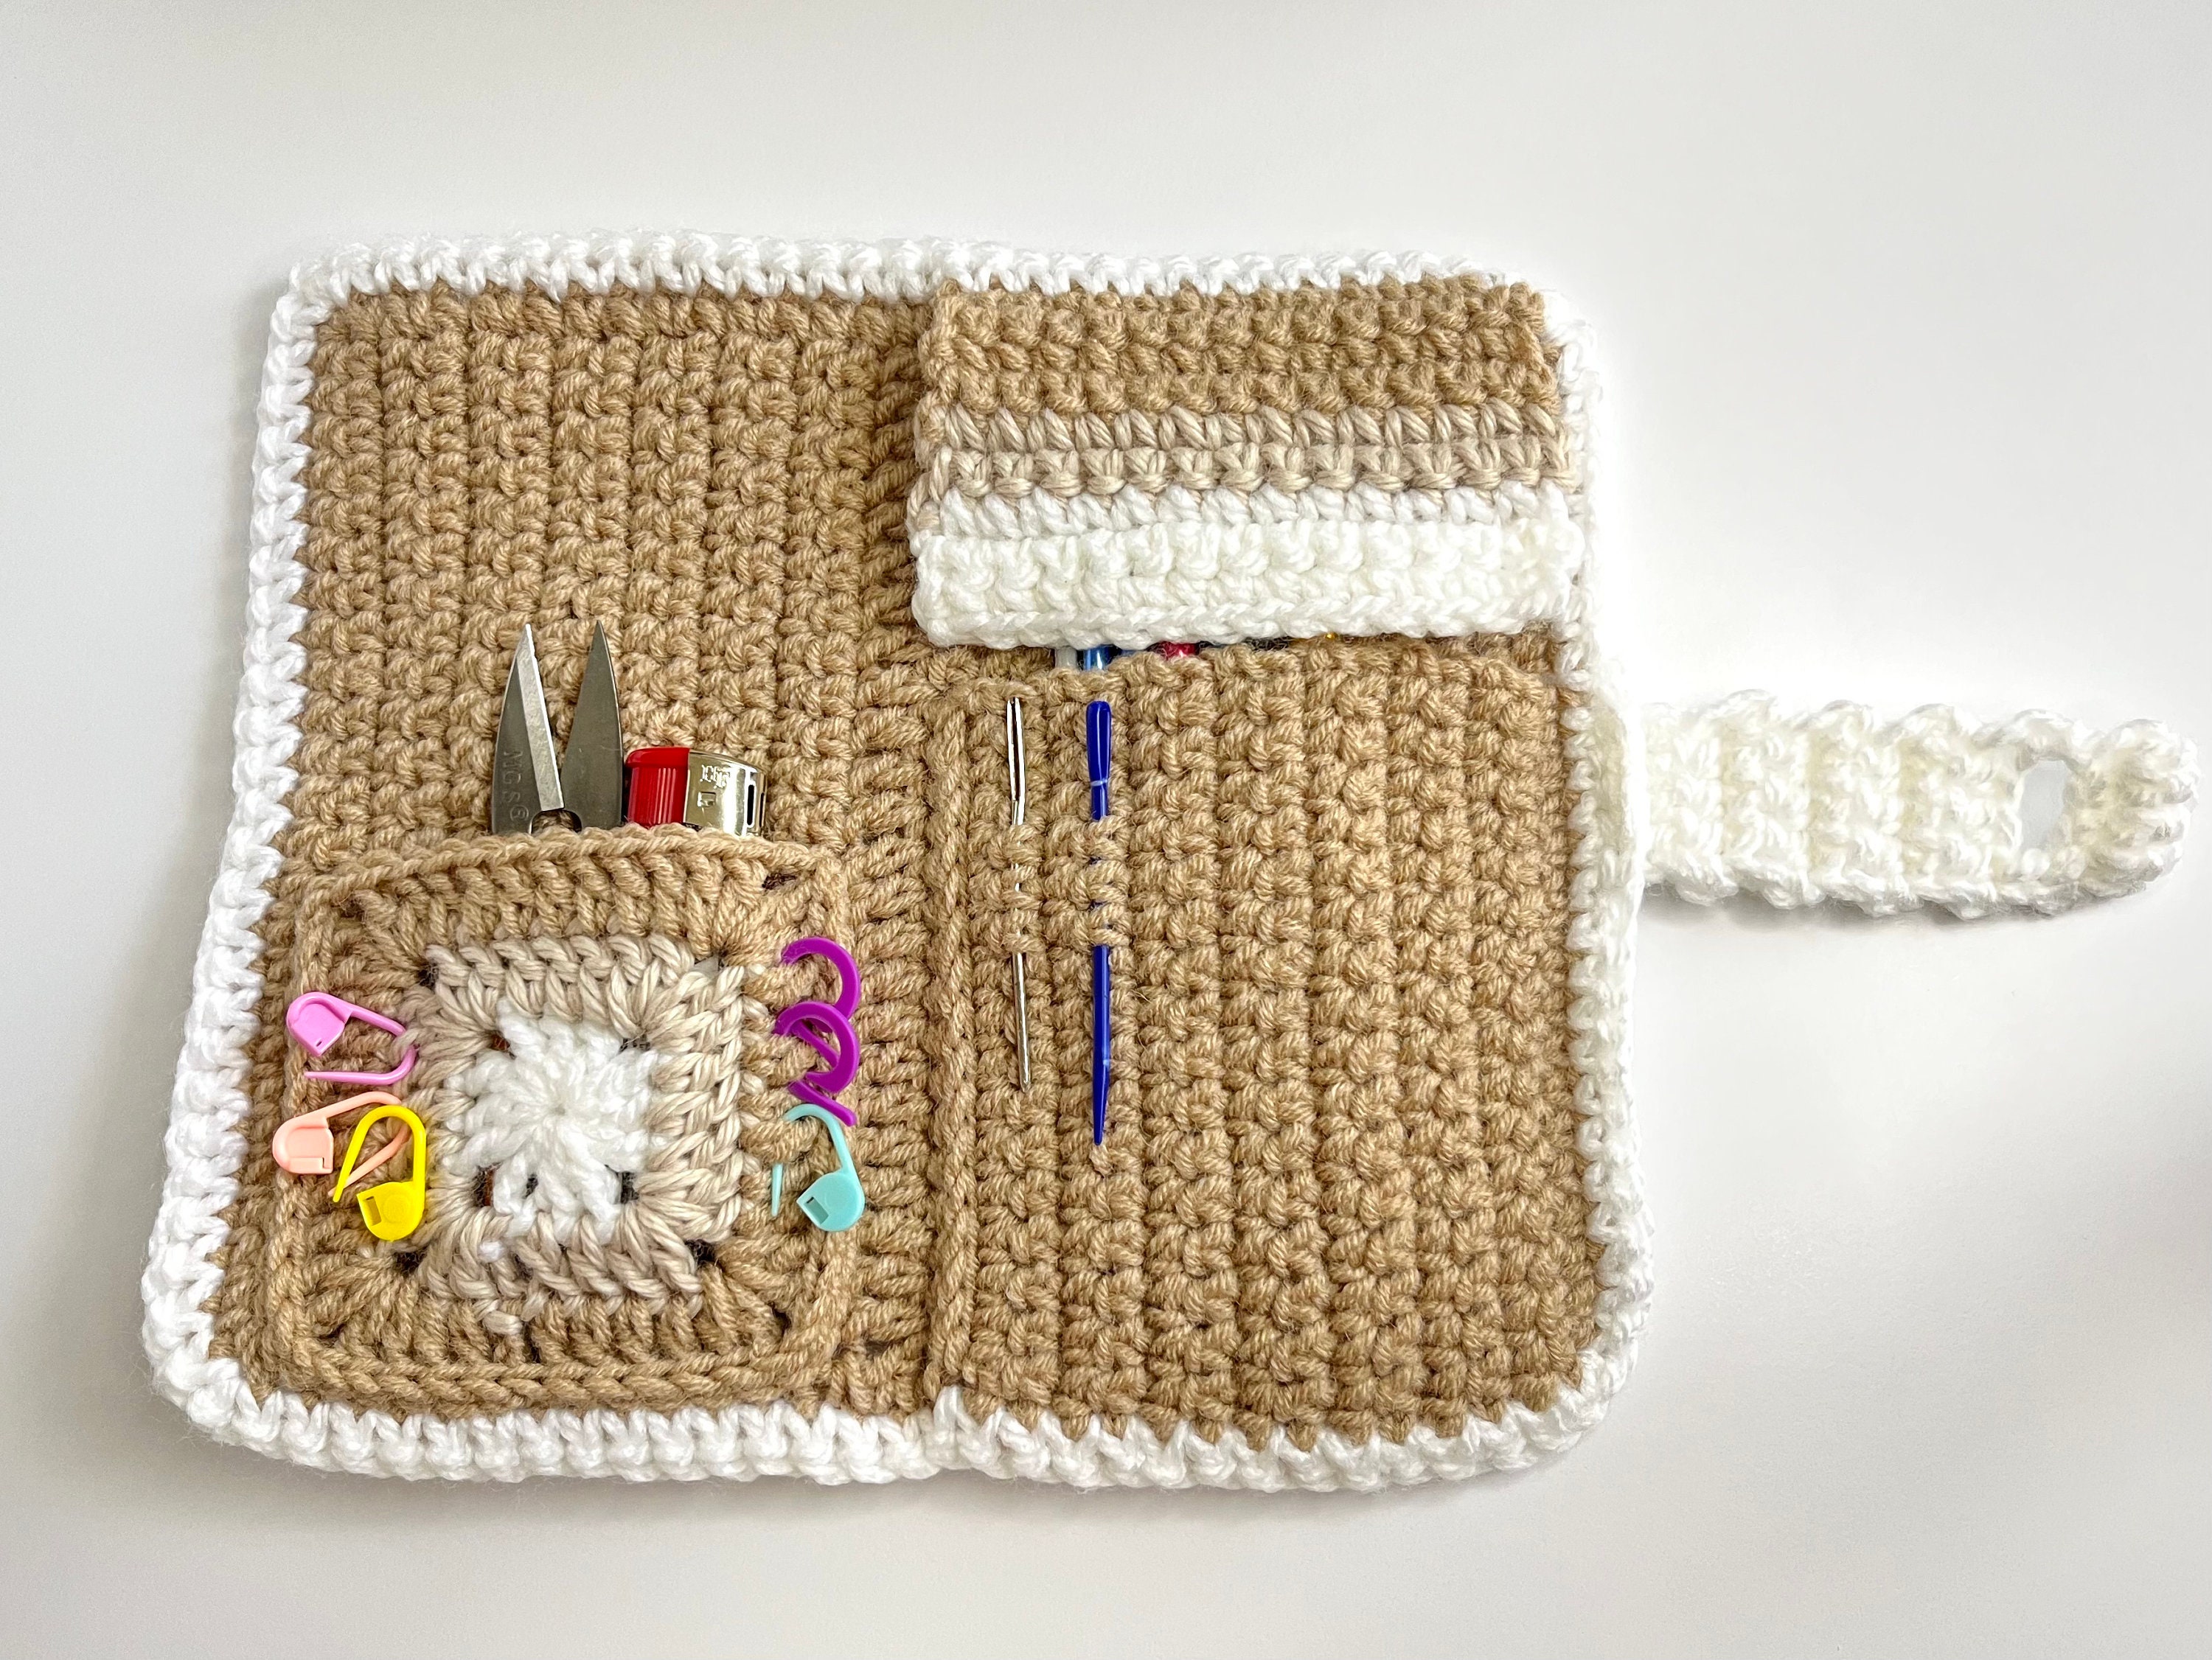 PDF Pattern Crochet Hook Case. Beginner Crochet 